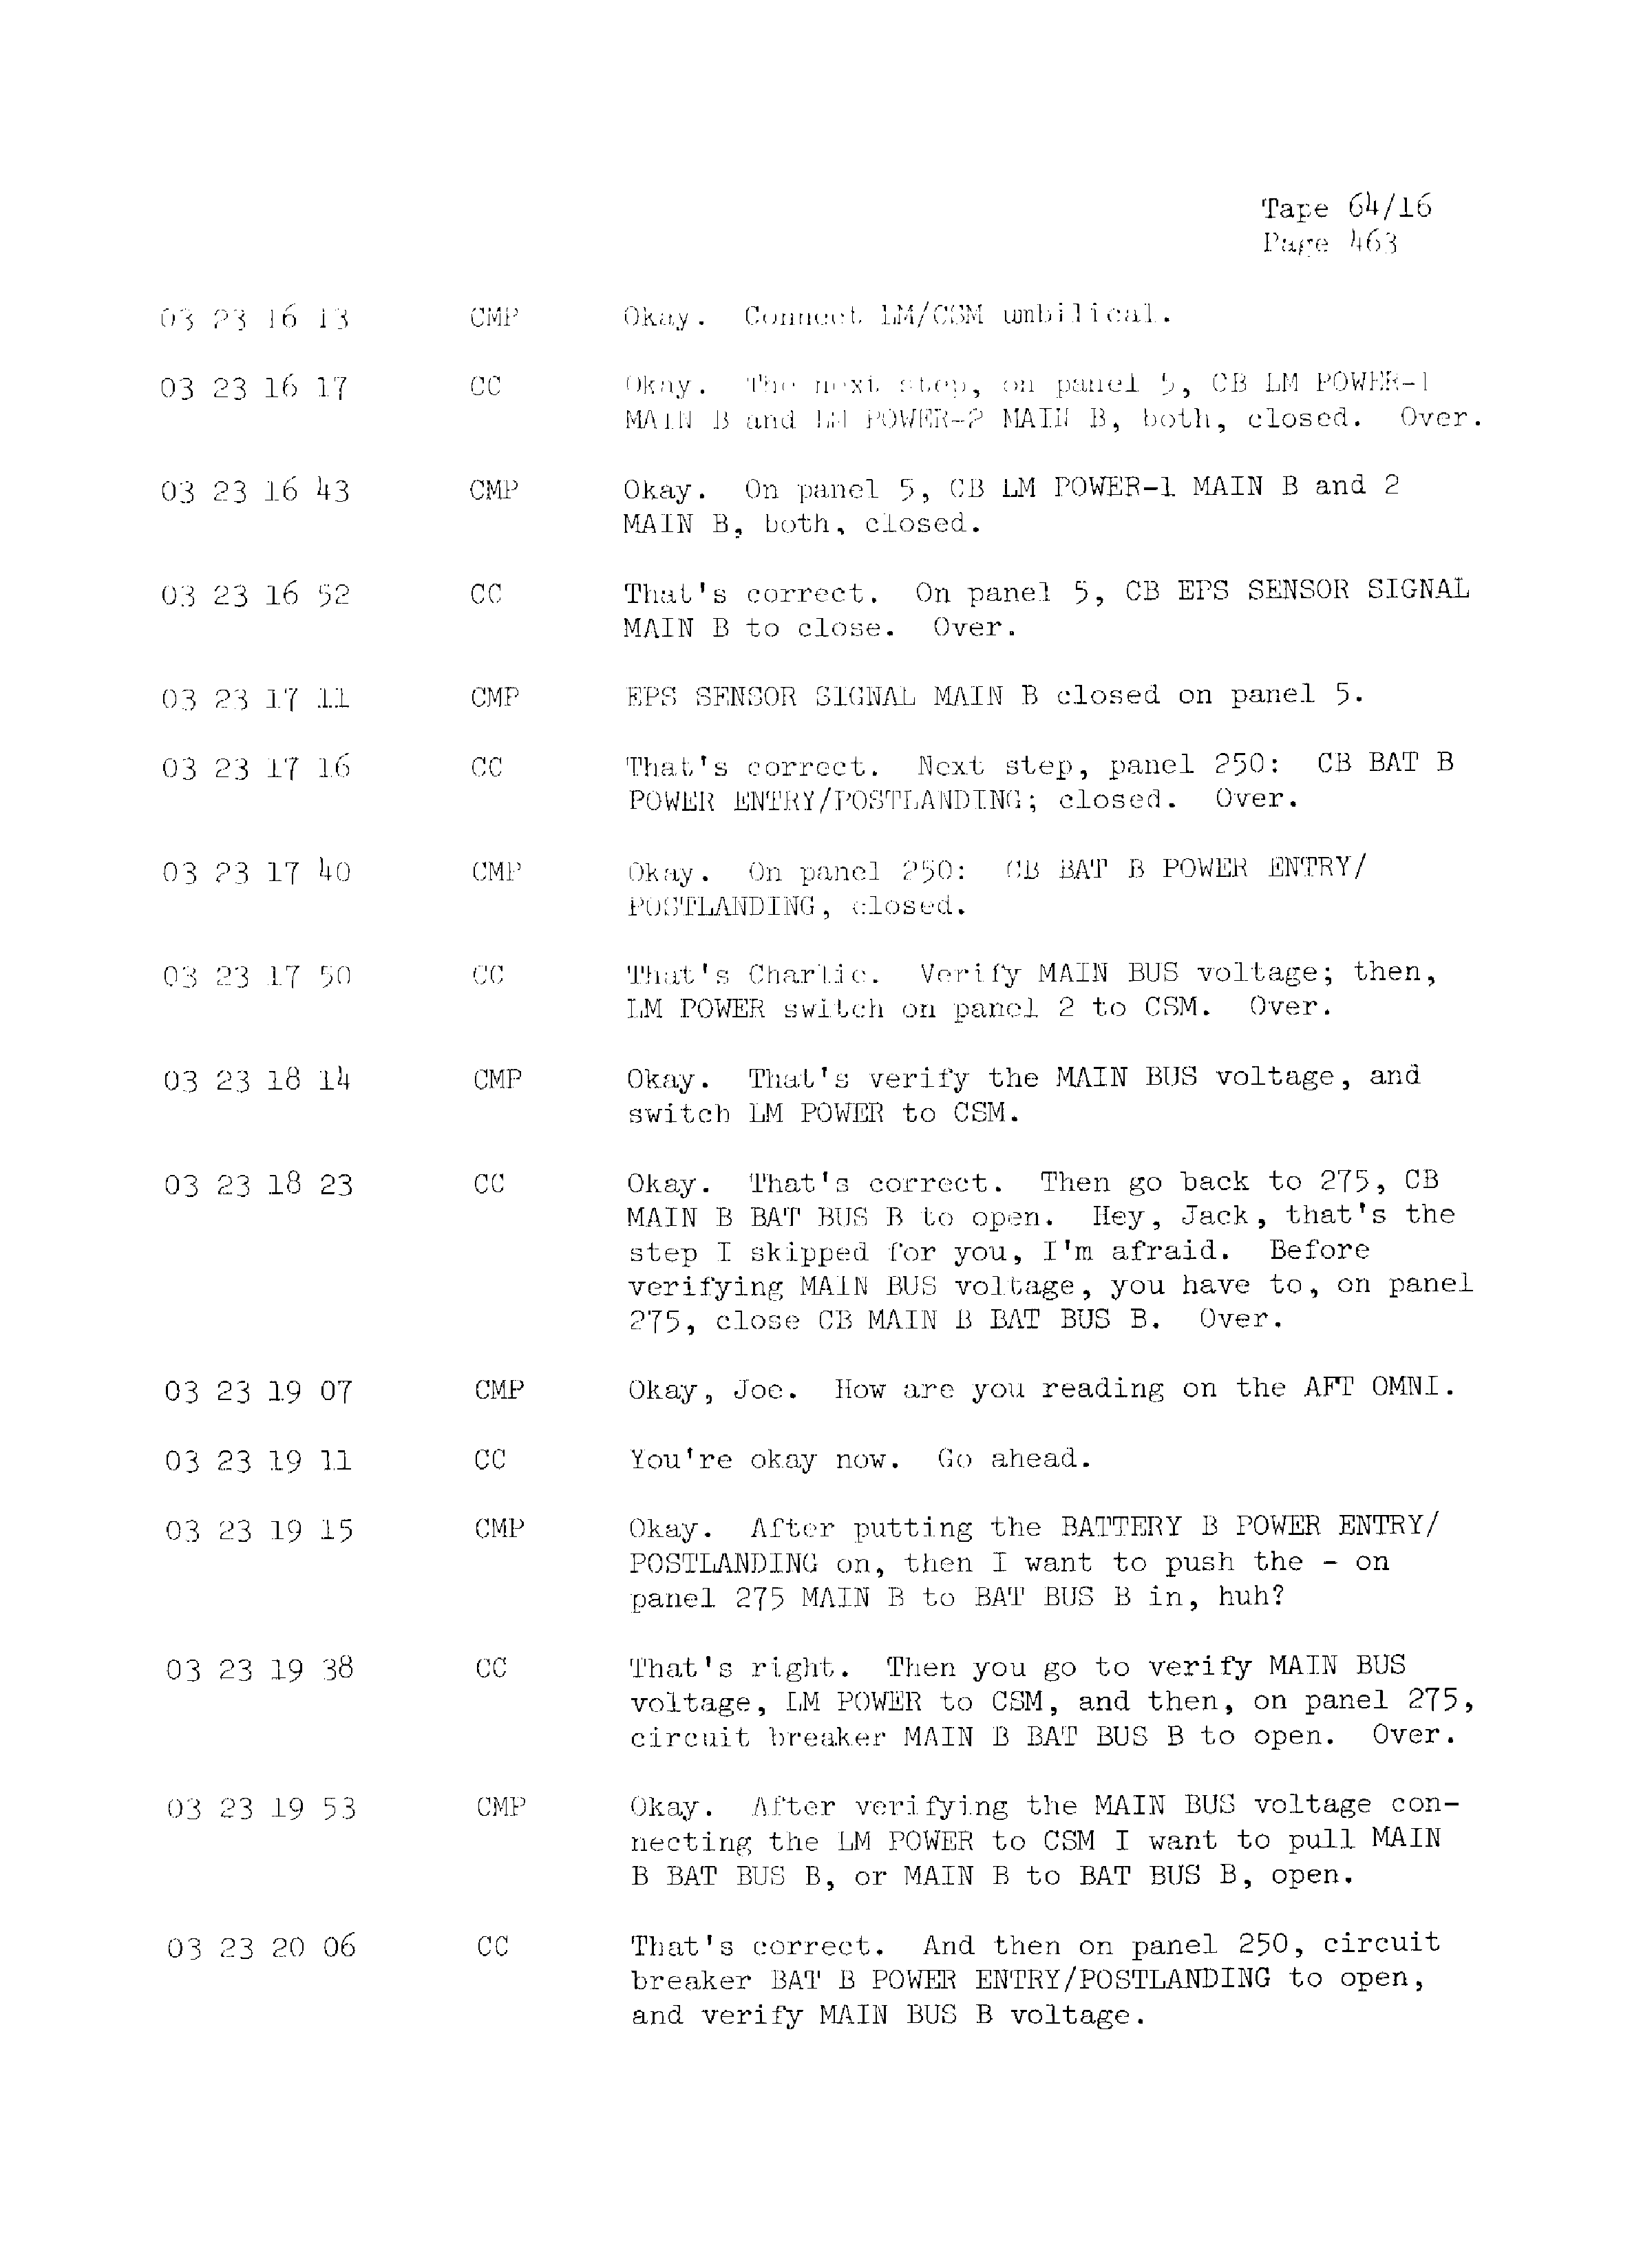 Page 470 of Apollo 13’s original transcript